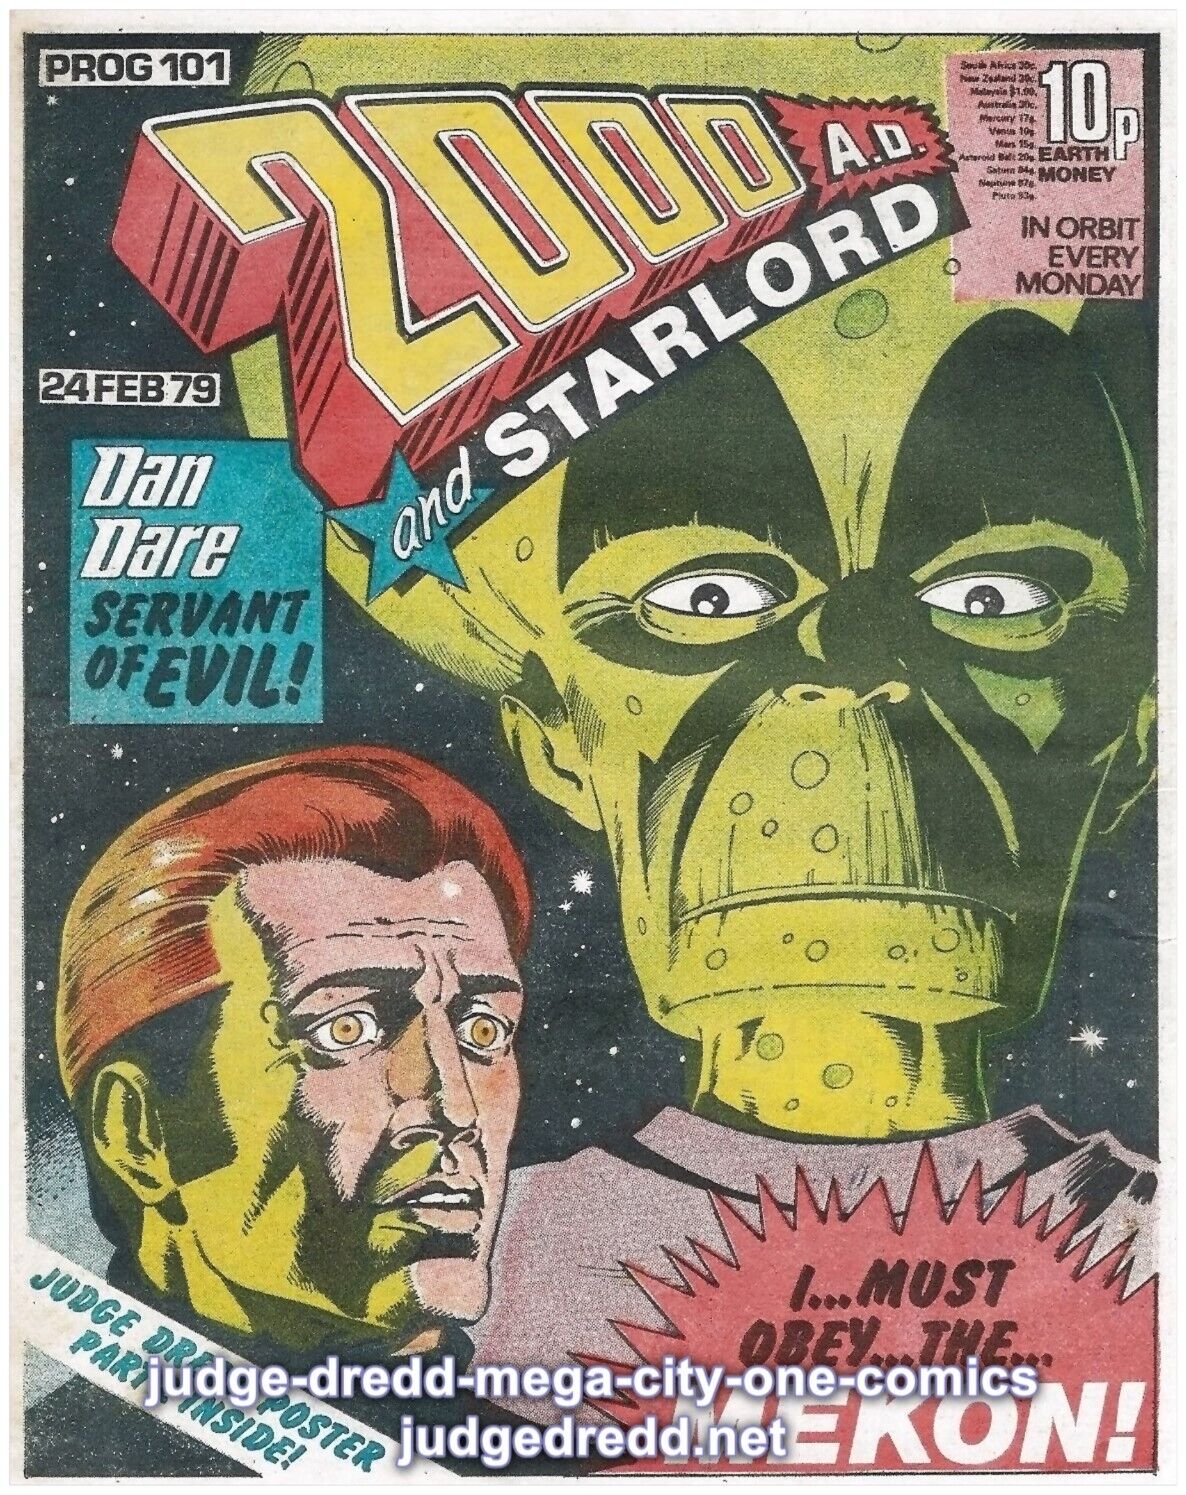 2000AD PROG 125 - 225 Judge Dredd 2000A.D. Comic Issues  1979 (mu)